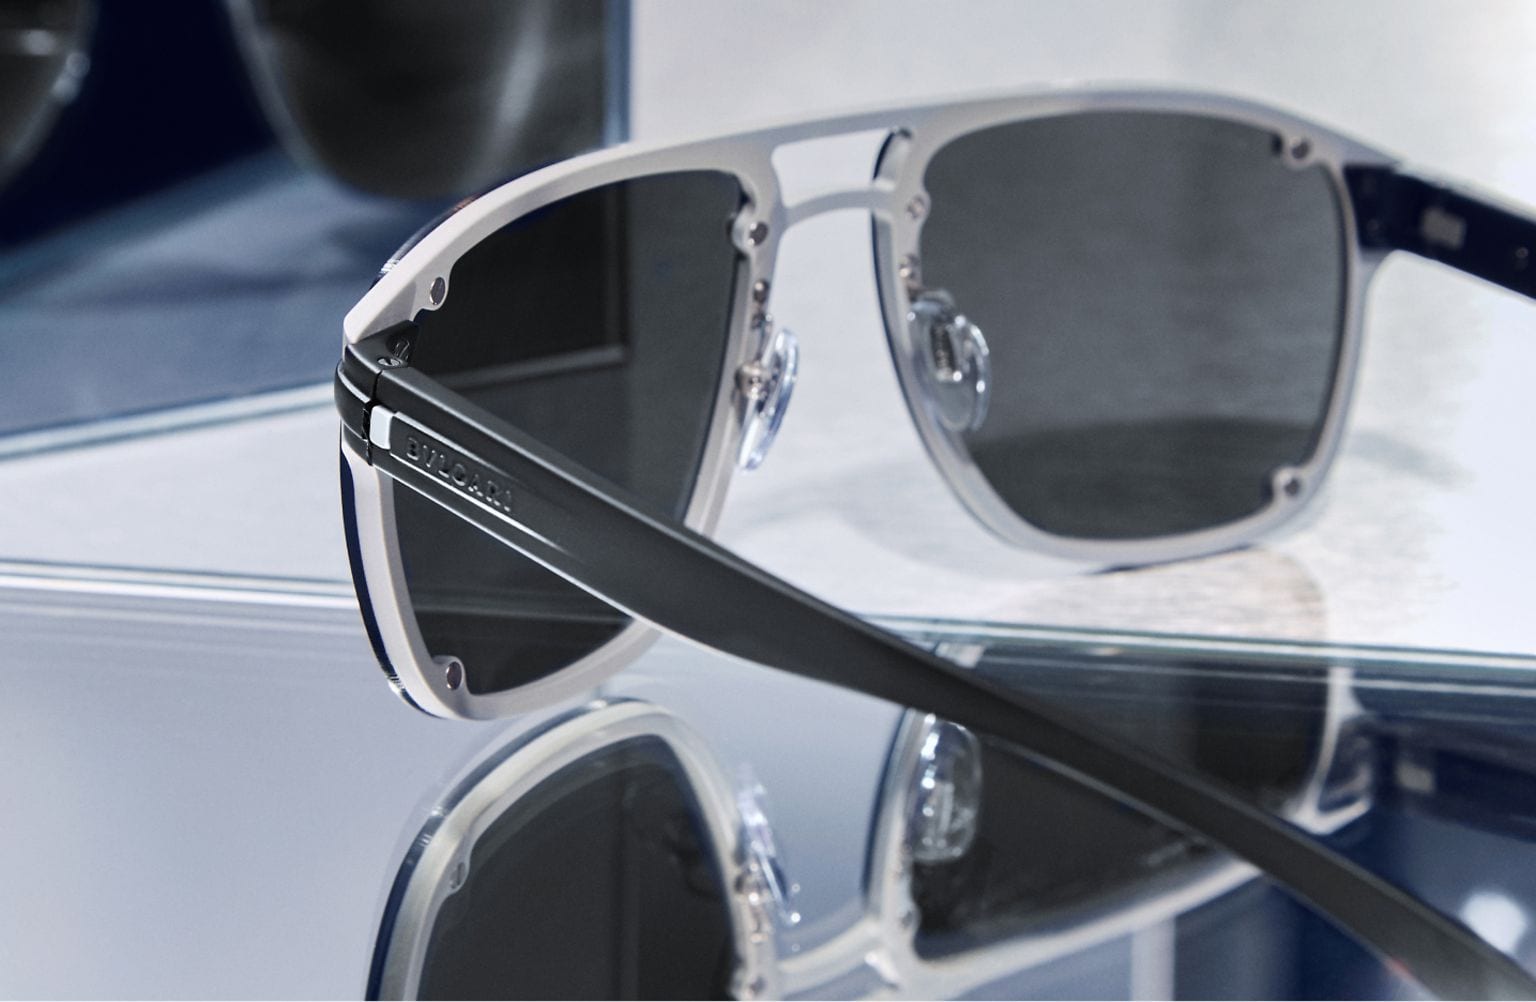 Louis Vuitton Gray Sunglasses for Men for sale